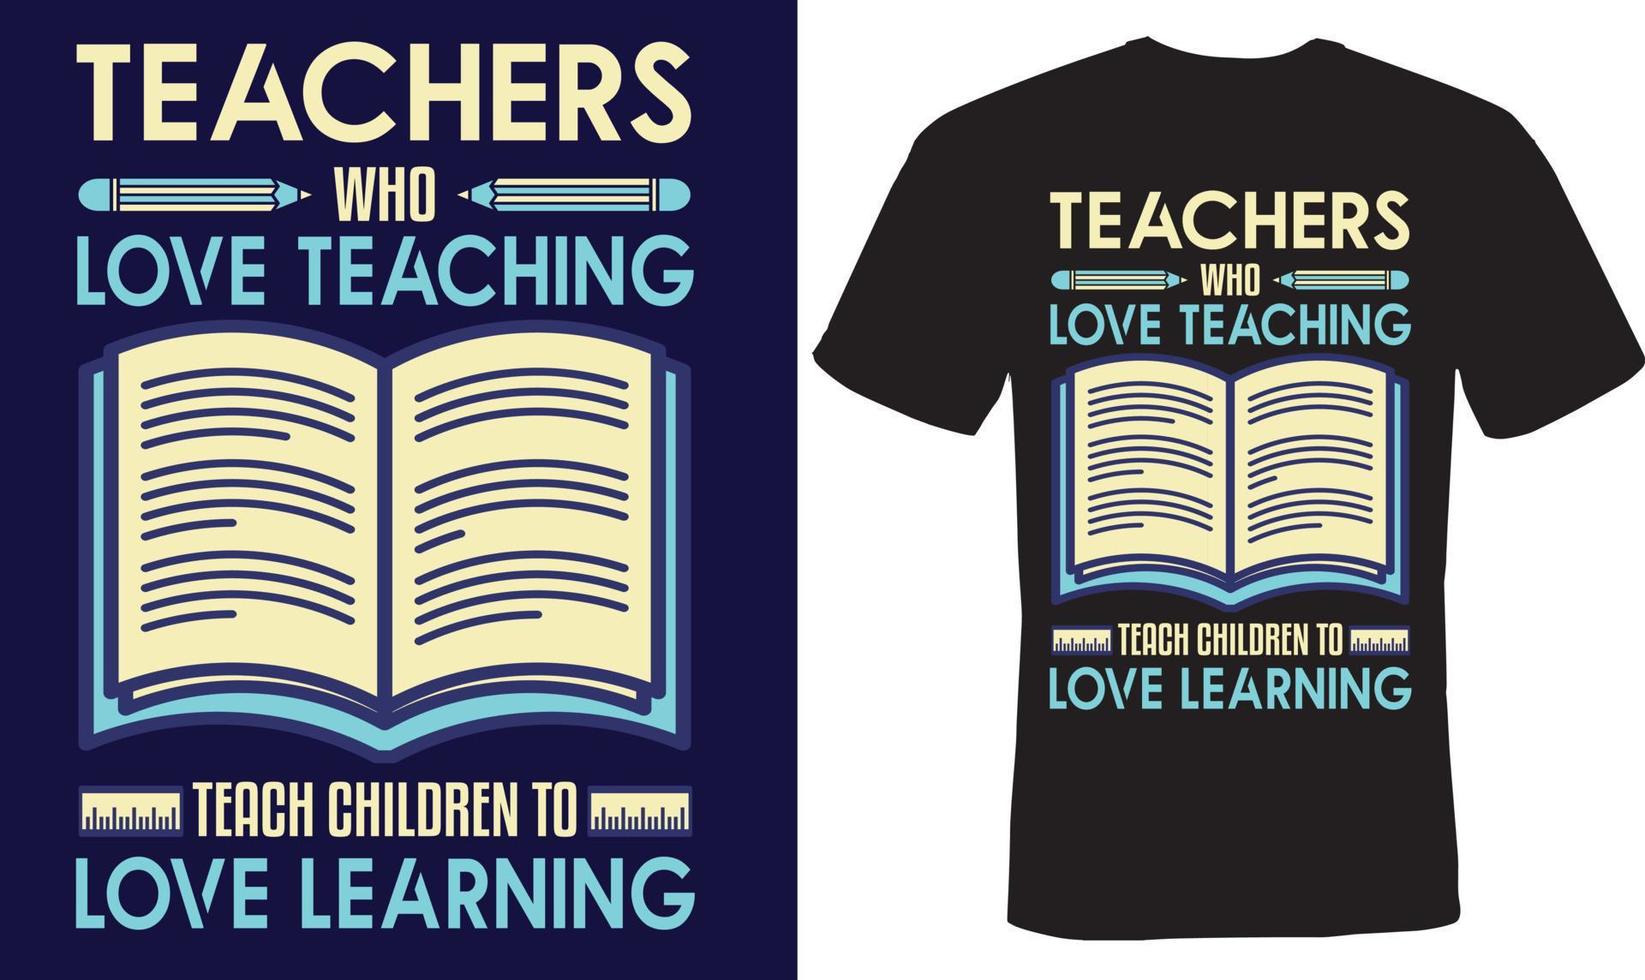 lärare som älskar undervisning lär barn att älska att lära sig t-shirtdesign för lärare vektor